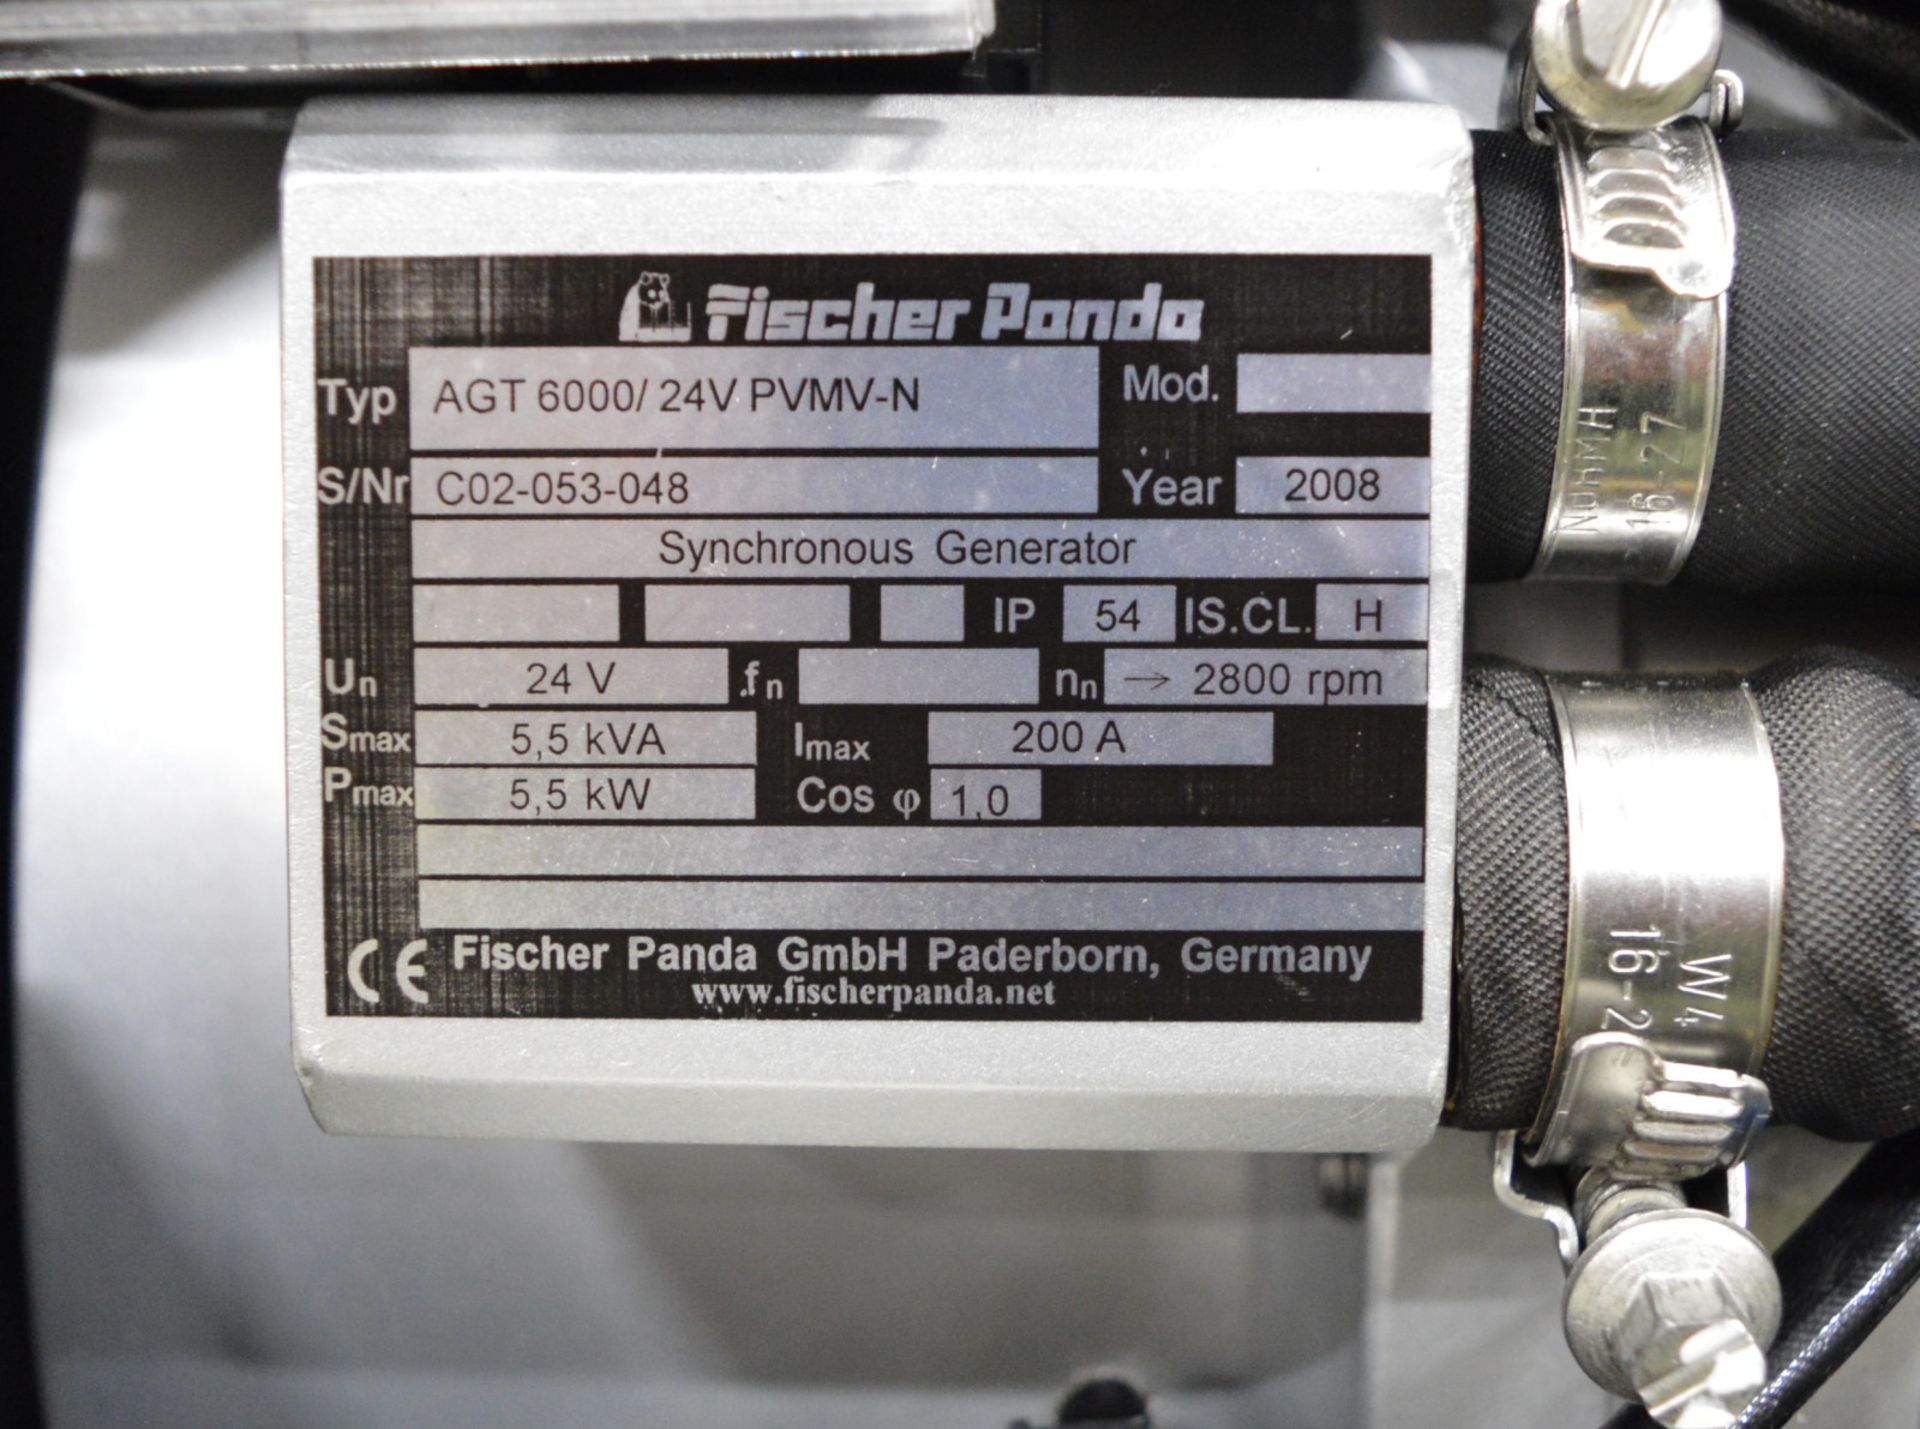 Fischer Panda Fully Enclosed Diesel Generator - Type AGT 6000/24V PVMV-N - 24V 5.5kVA. - Image 3 of 3